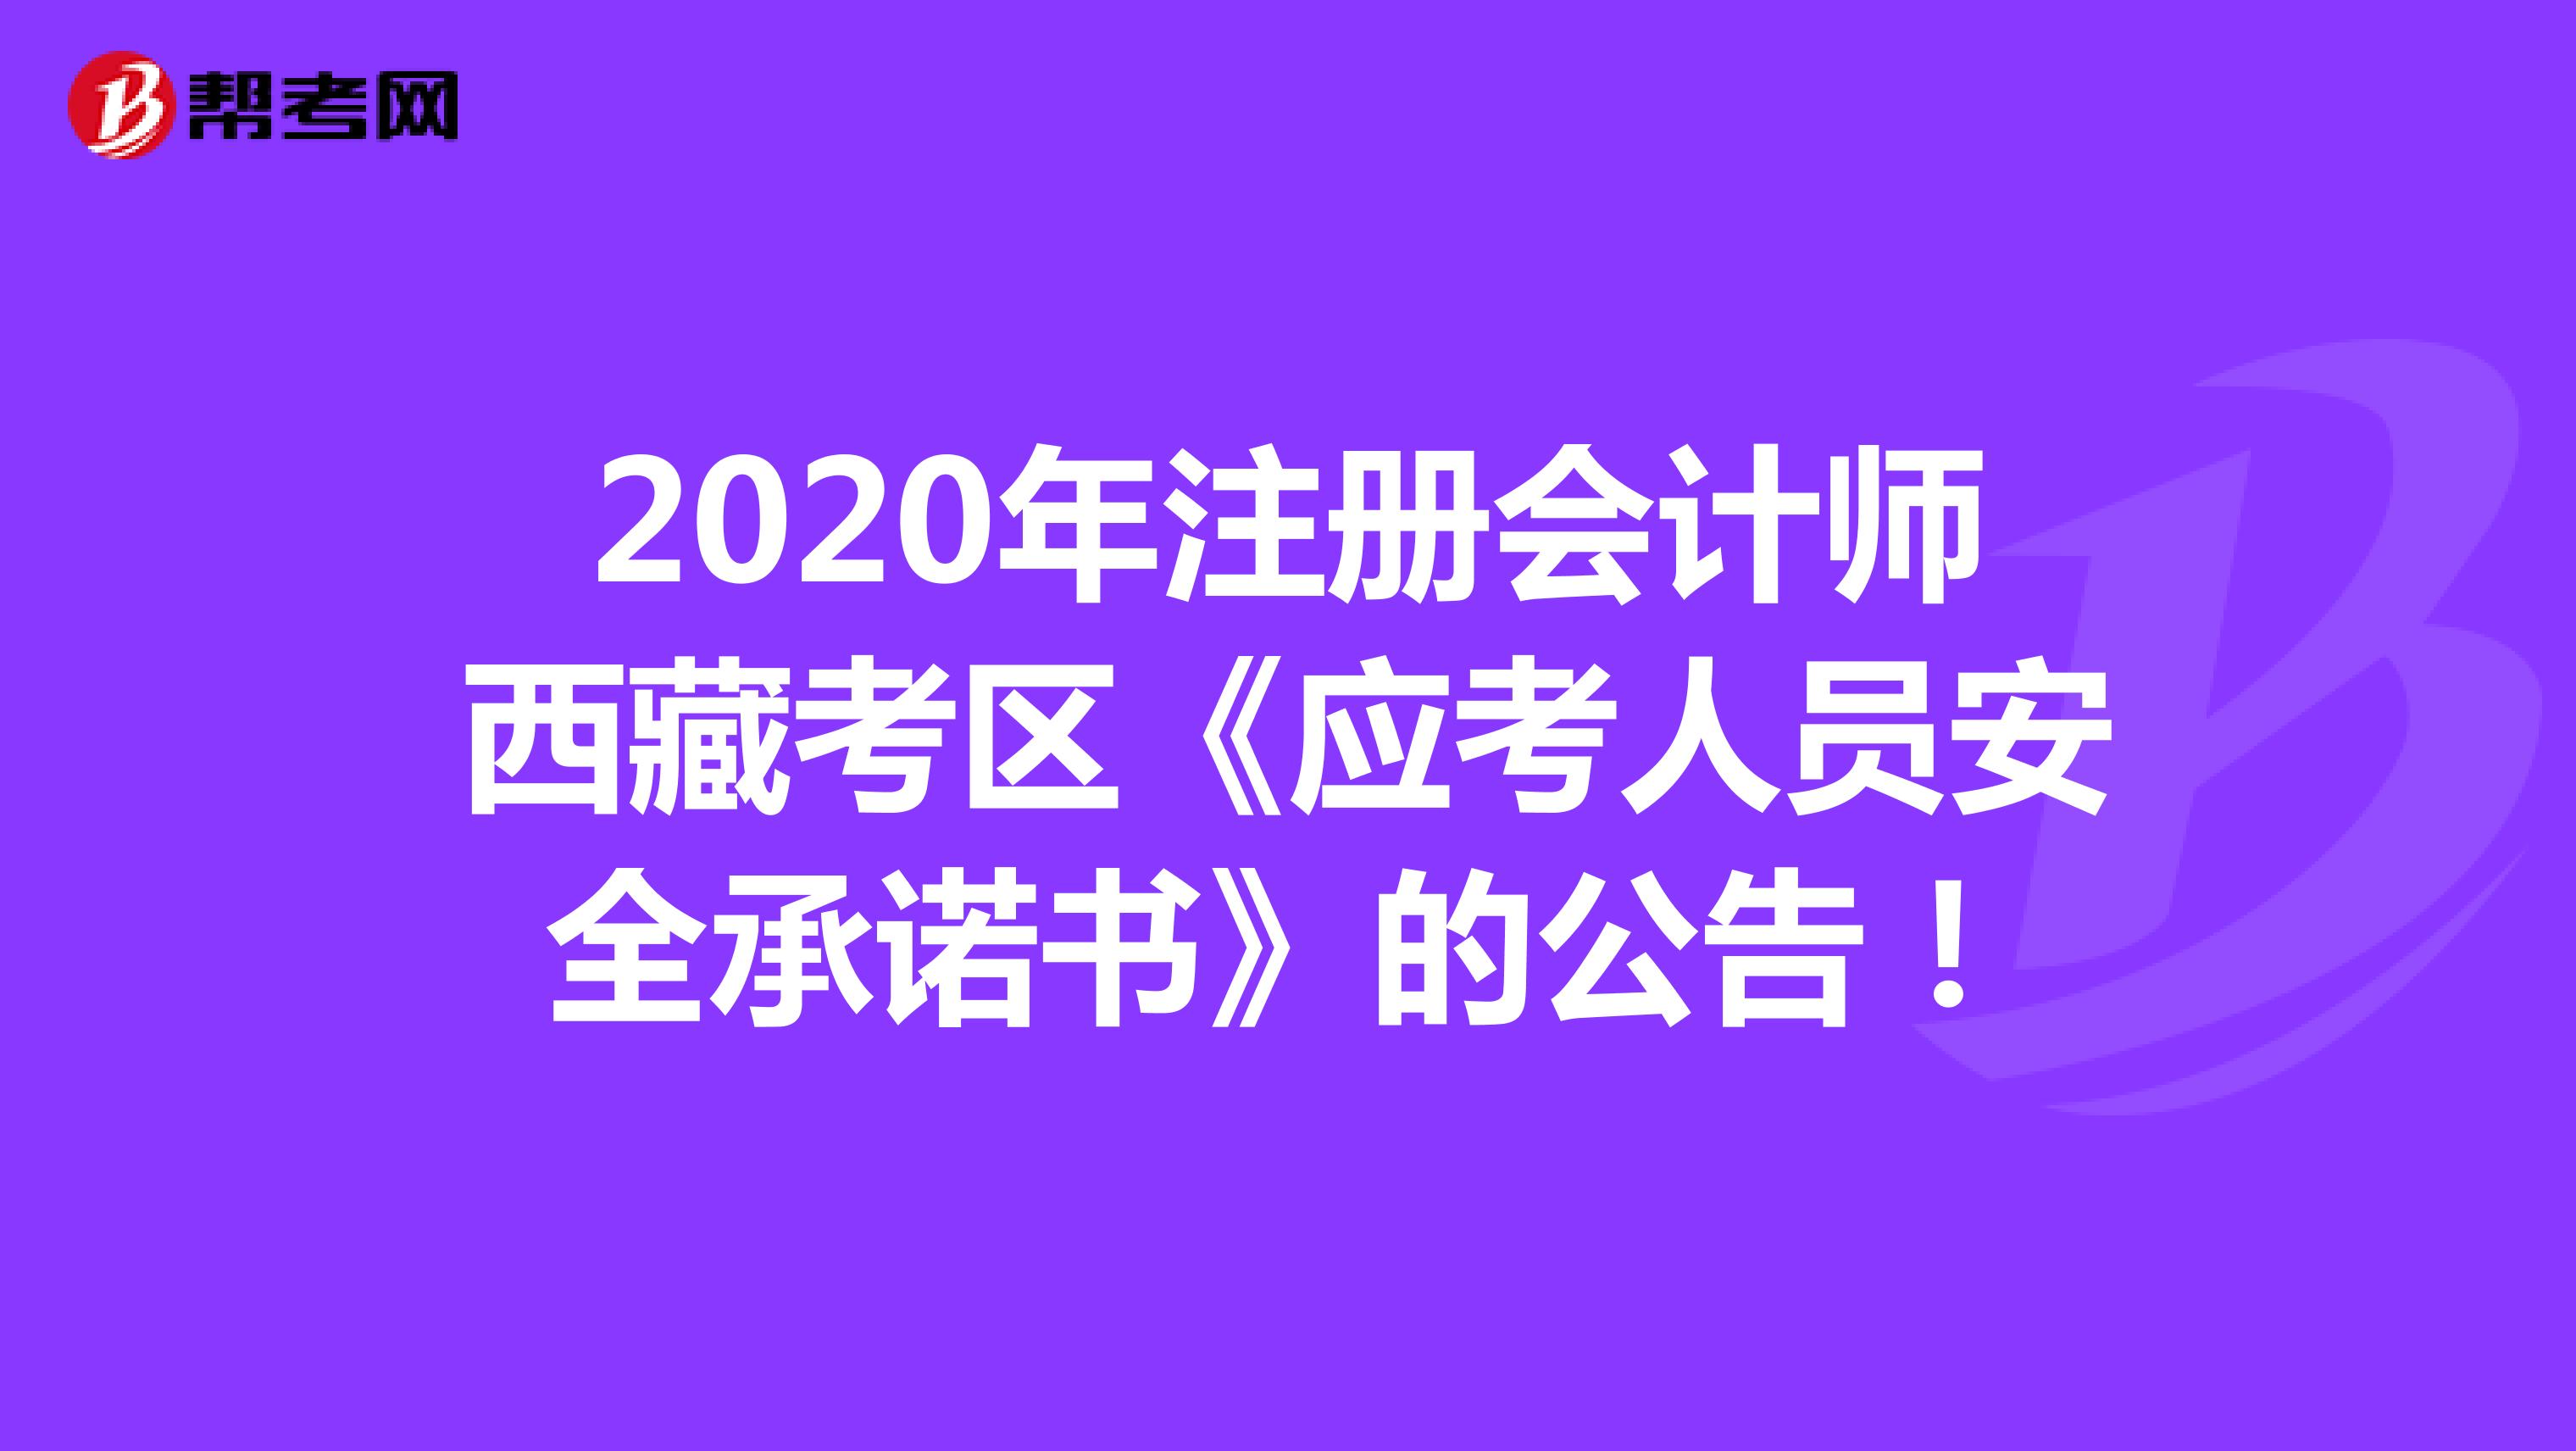 2020年注册会计师西藏考区《应考人员安全承诺书》的公告！